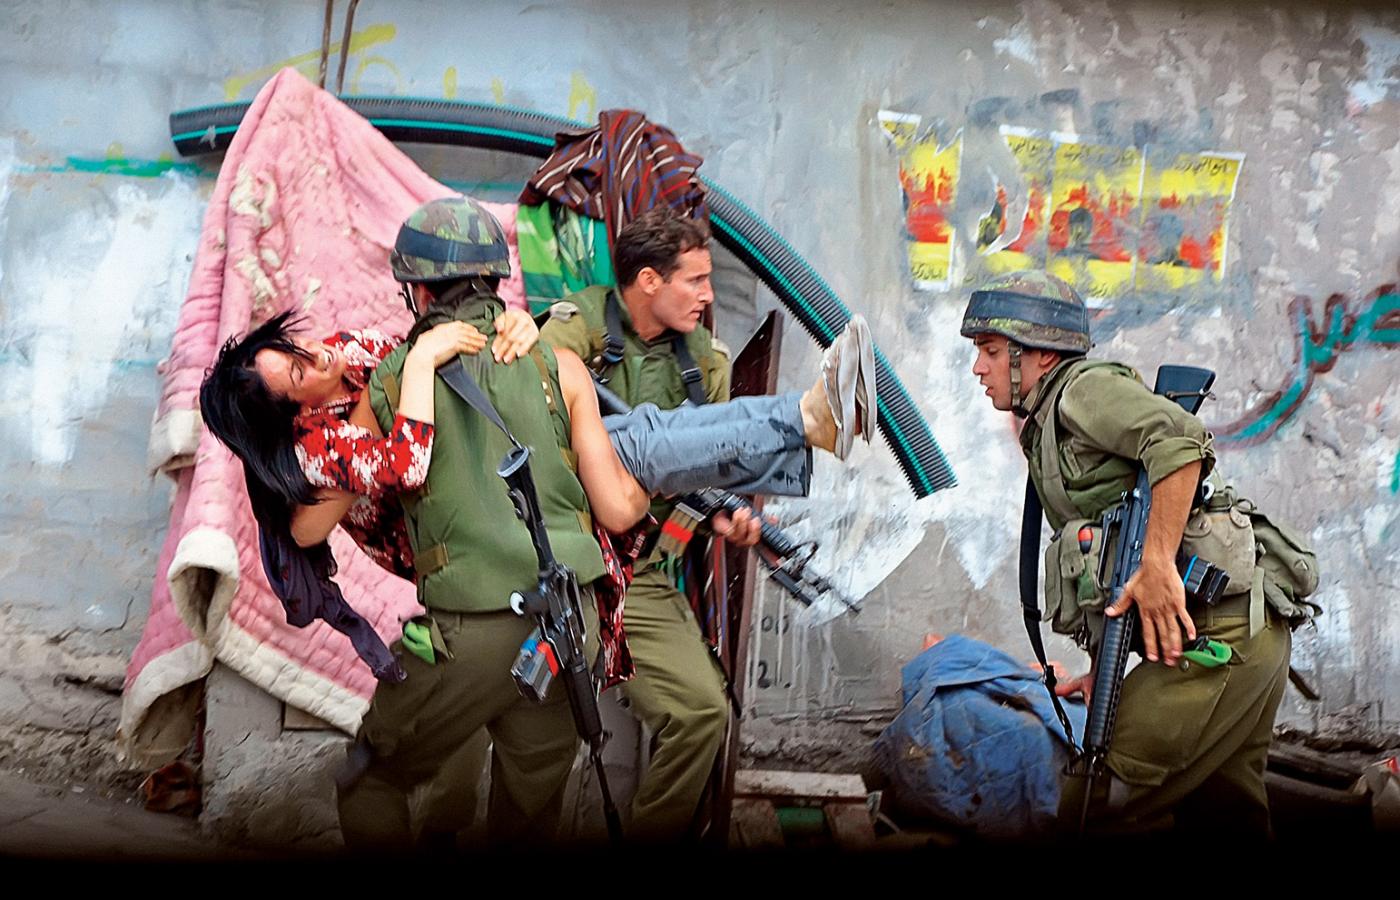 Filmowy portret konfliktu izraelsko-palestyńskiego.